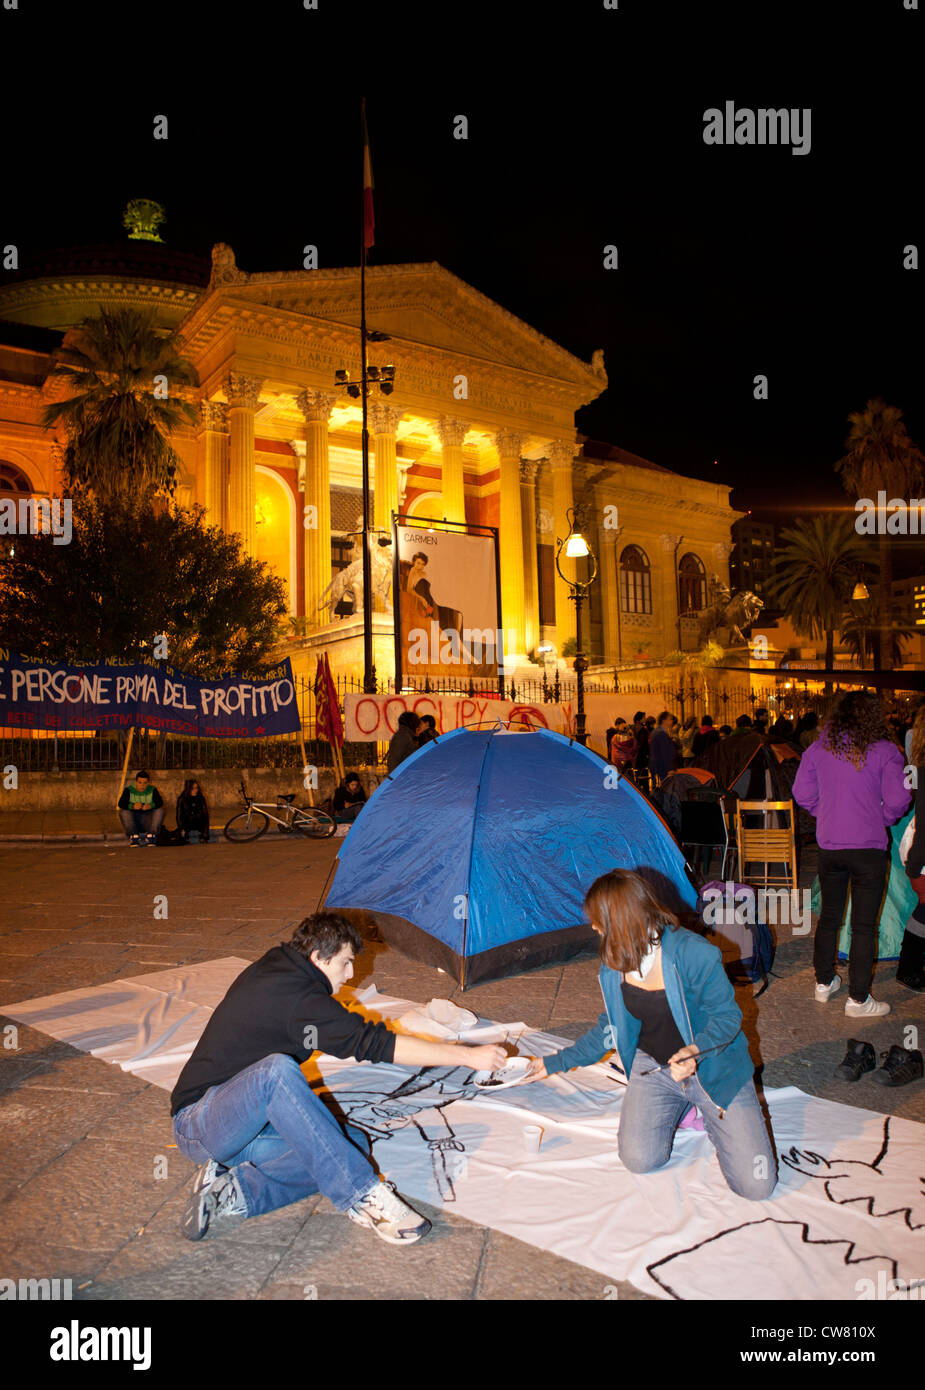 Wall Street di protesta, Teatro Massimo, Palermo Foto Stock